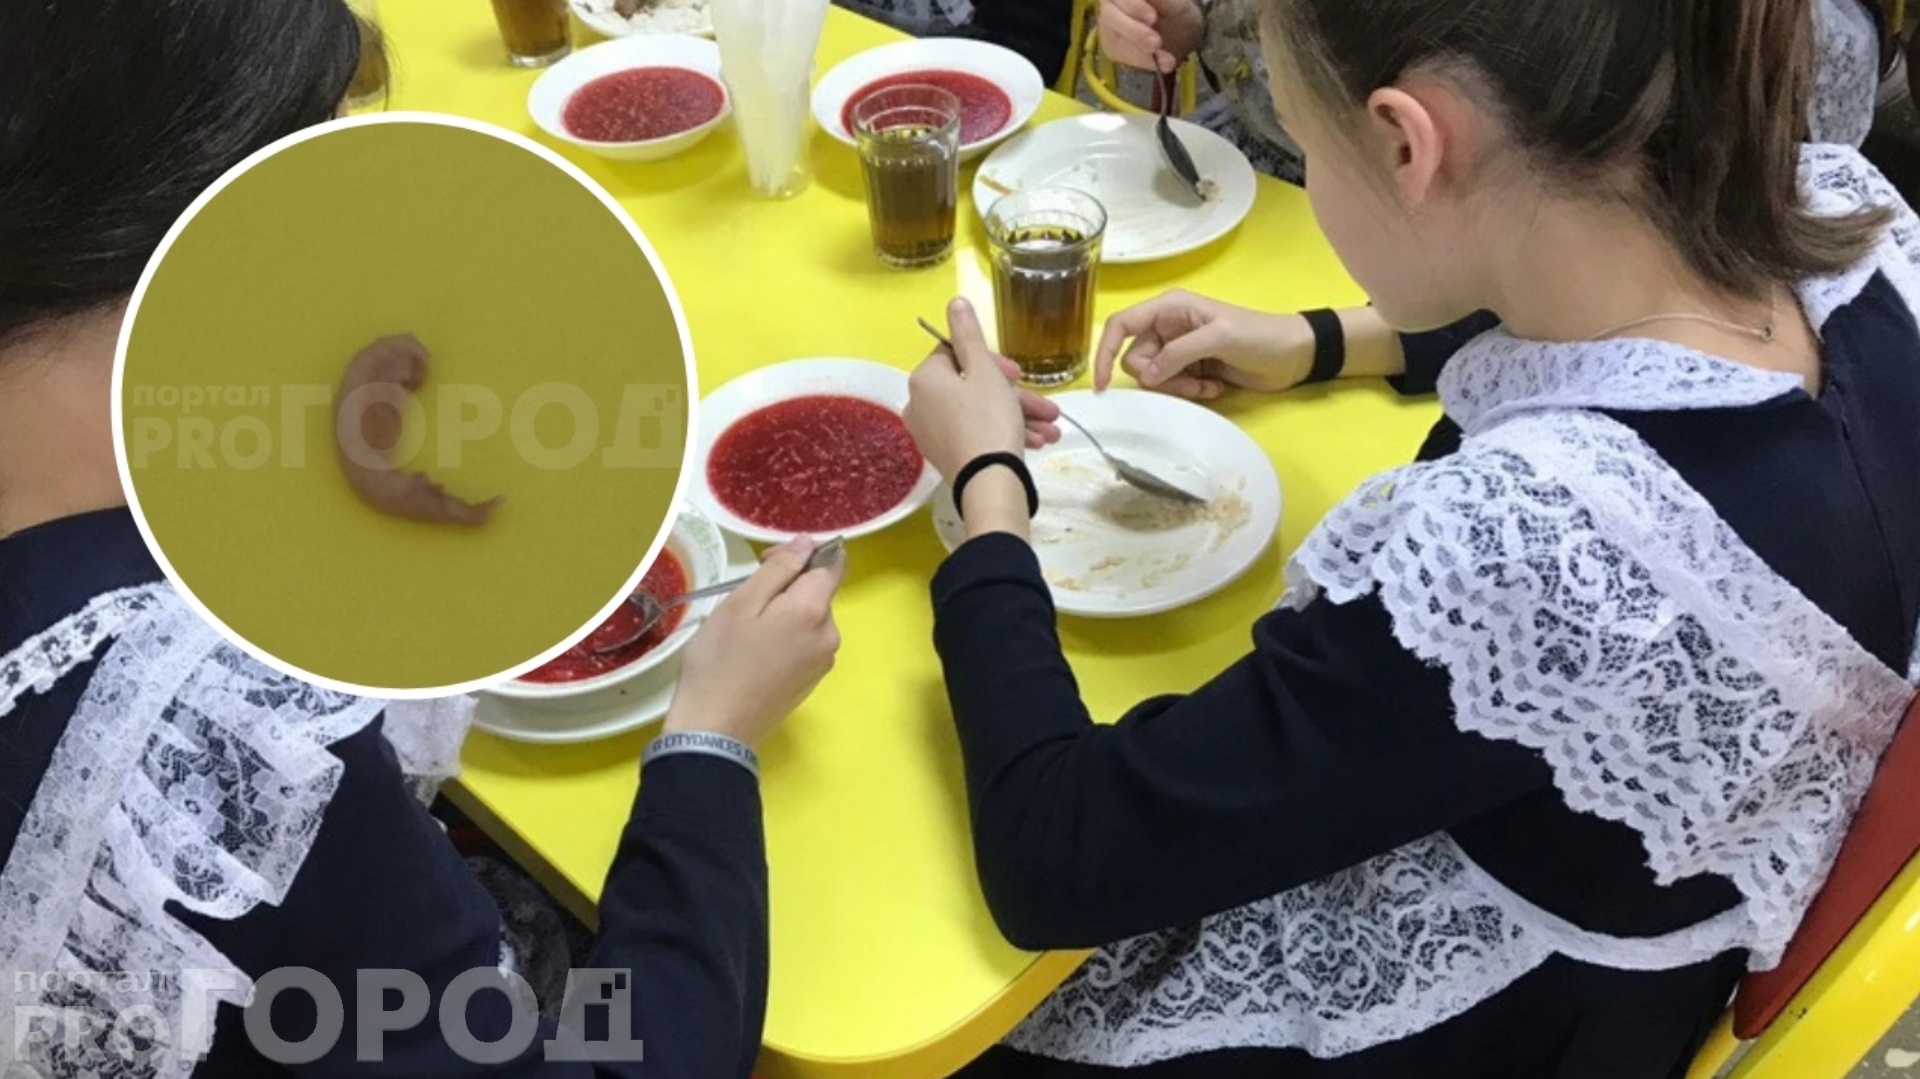 Новочебоксарские школьники нашли личинку в еде, но руководство назвало это инсценировкой